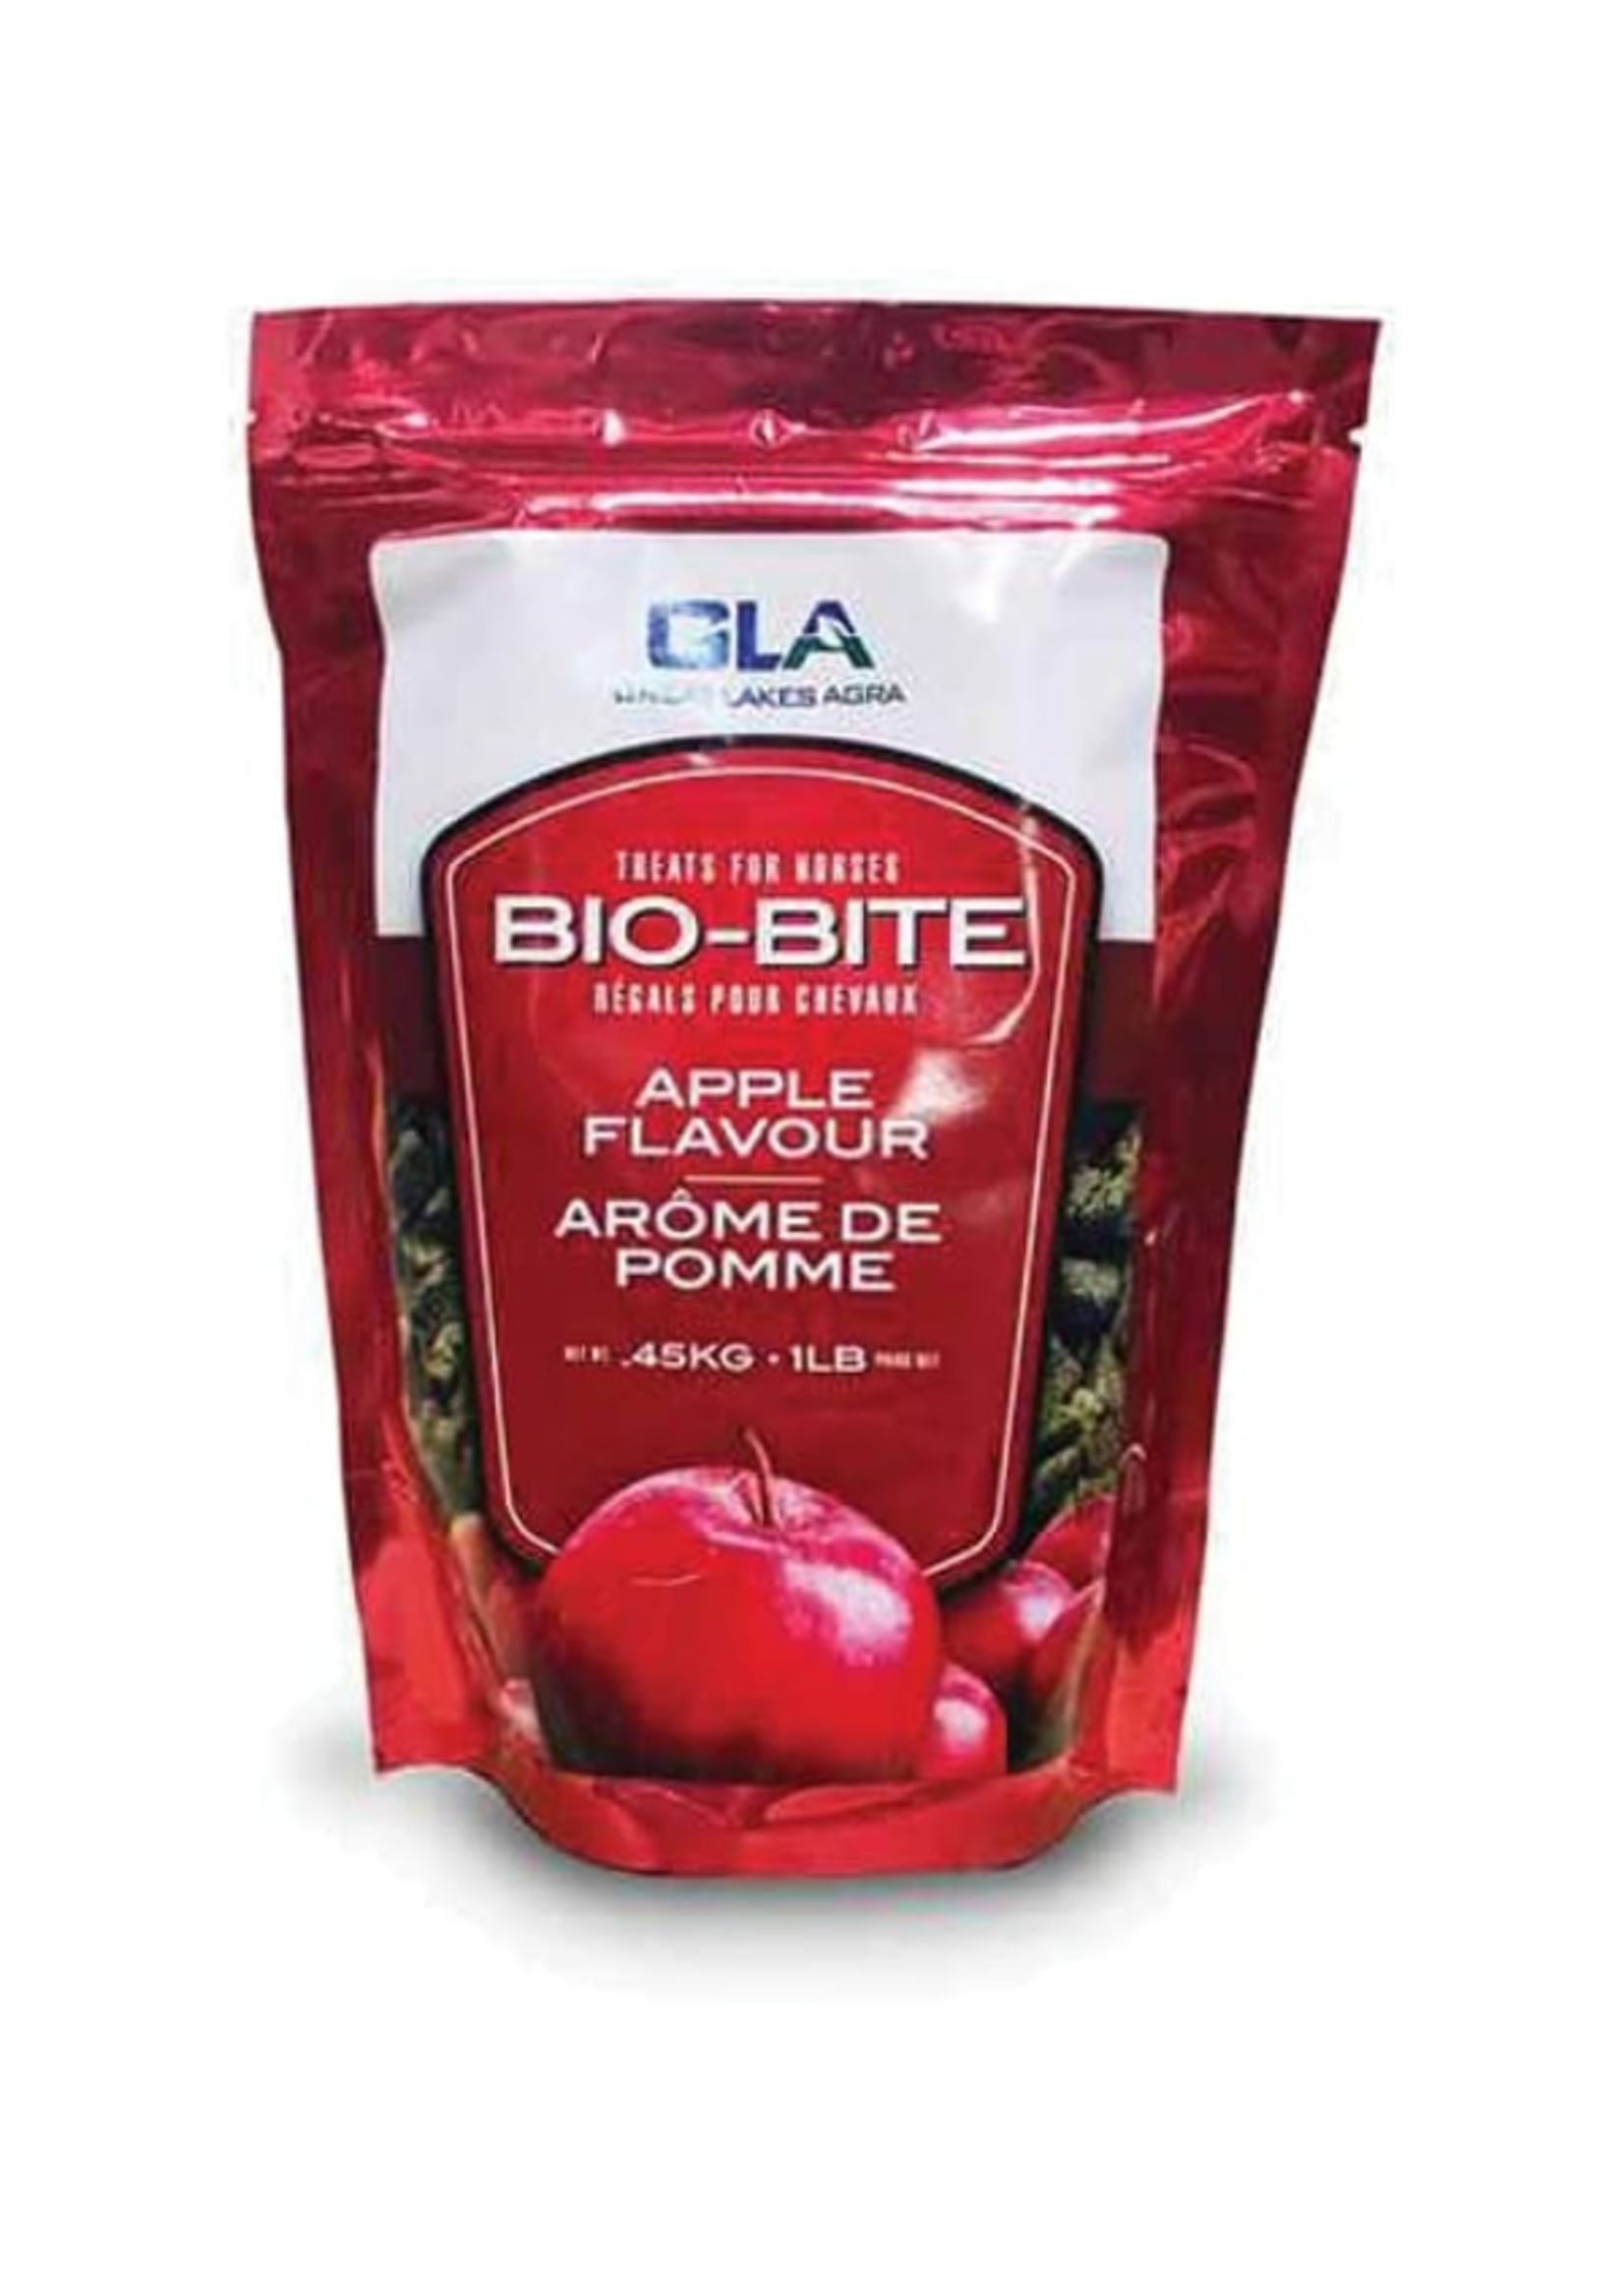 Bio-bite Bio-Bite Arôme de pomme